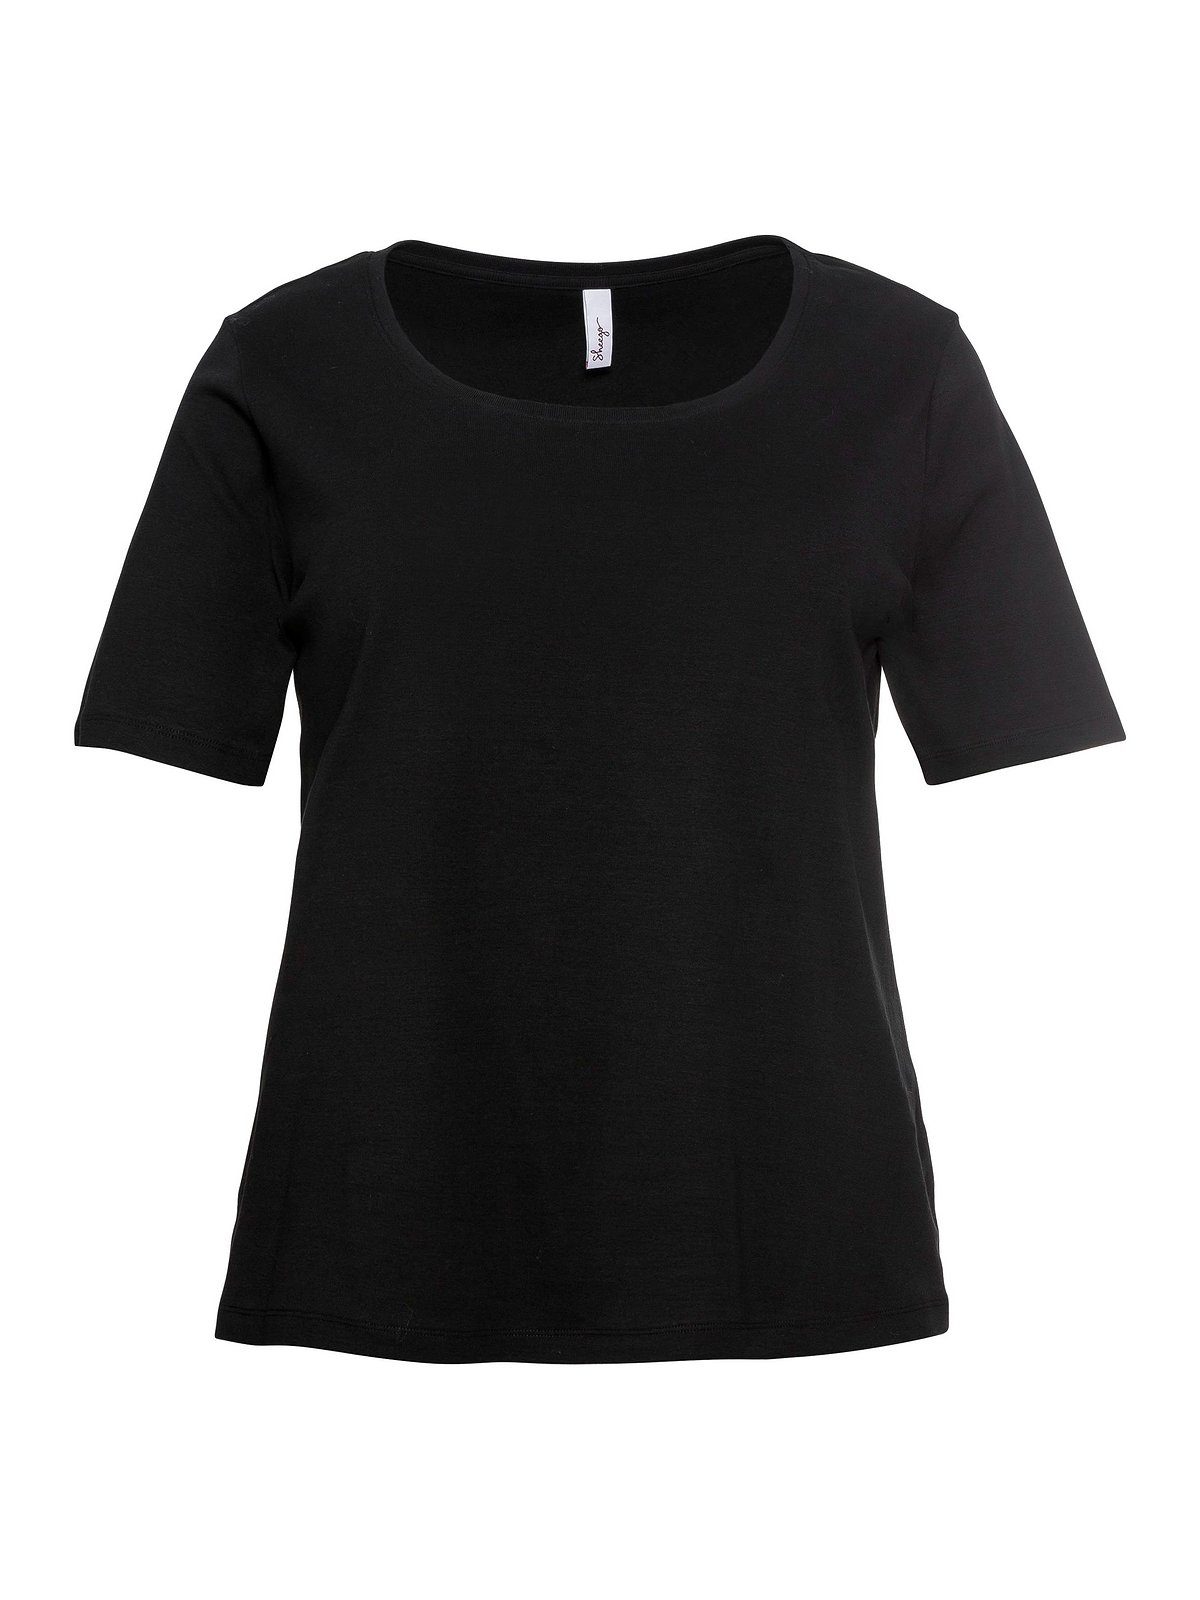 Große reiner T-Shirt schwarz Sheego Baumwolle Größen aus